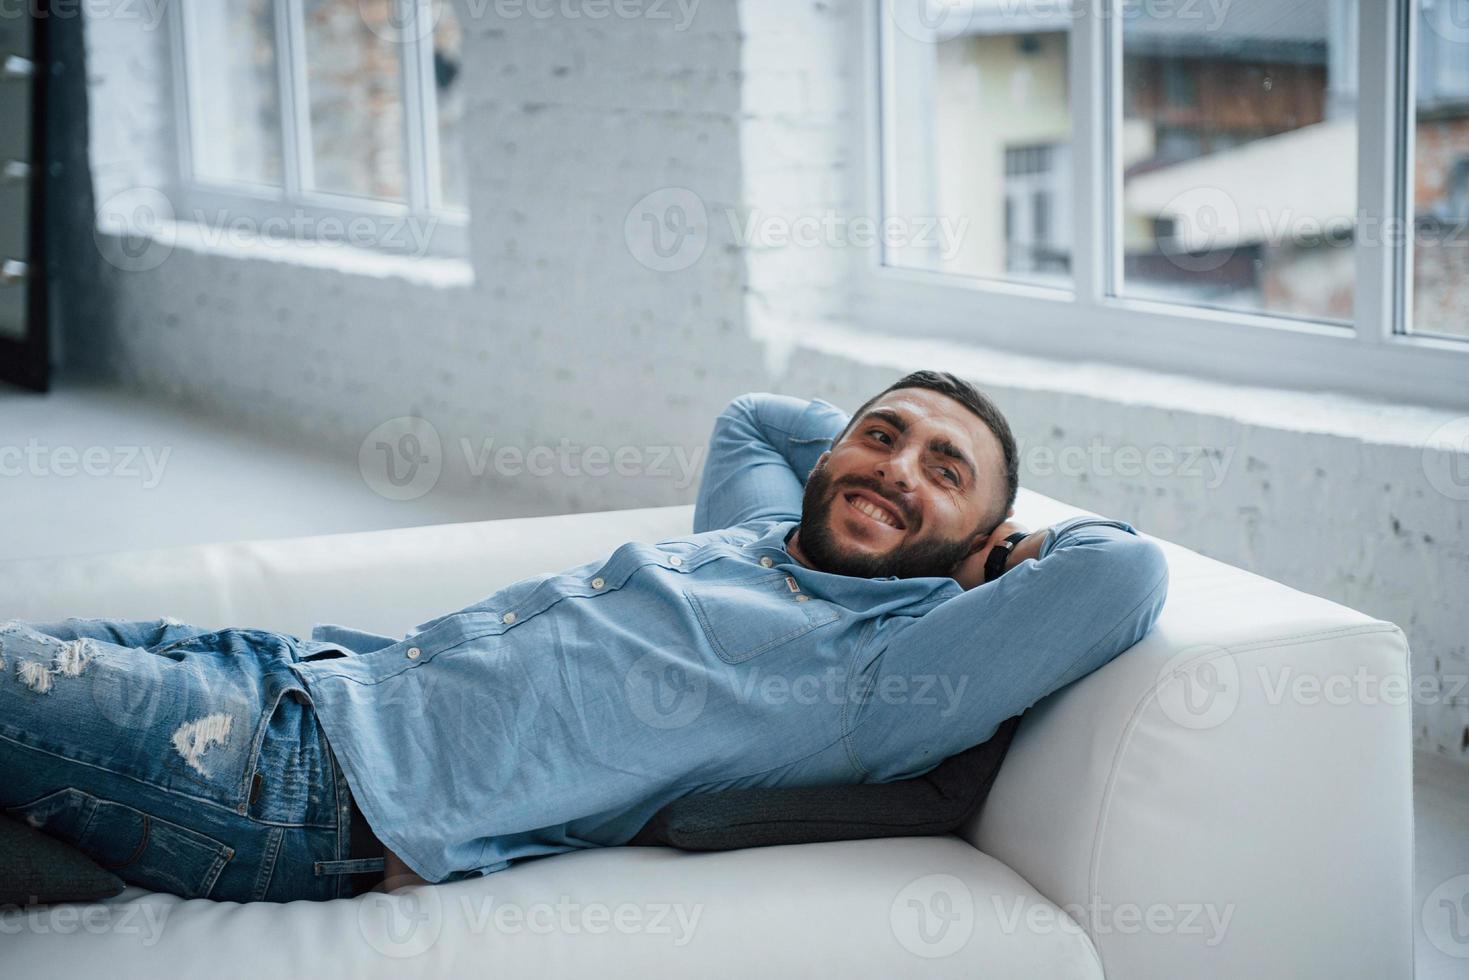 jovem com barba sorrindo e descansando enquanto está deitado na cama foto